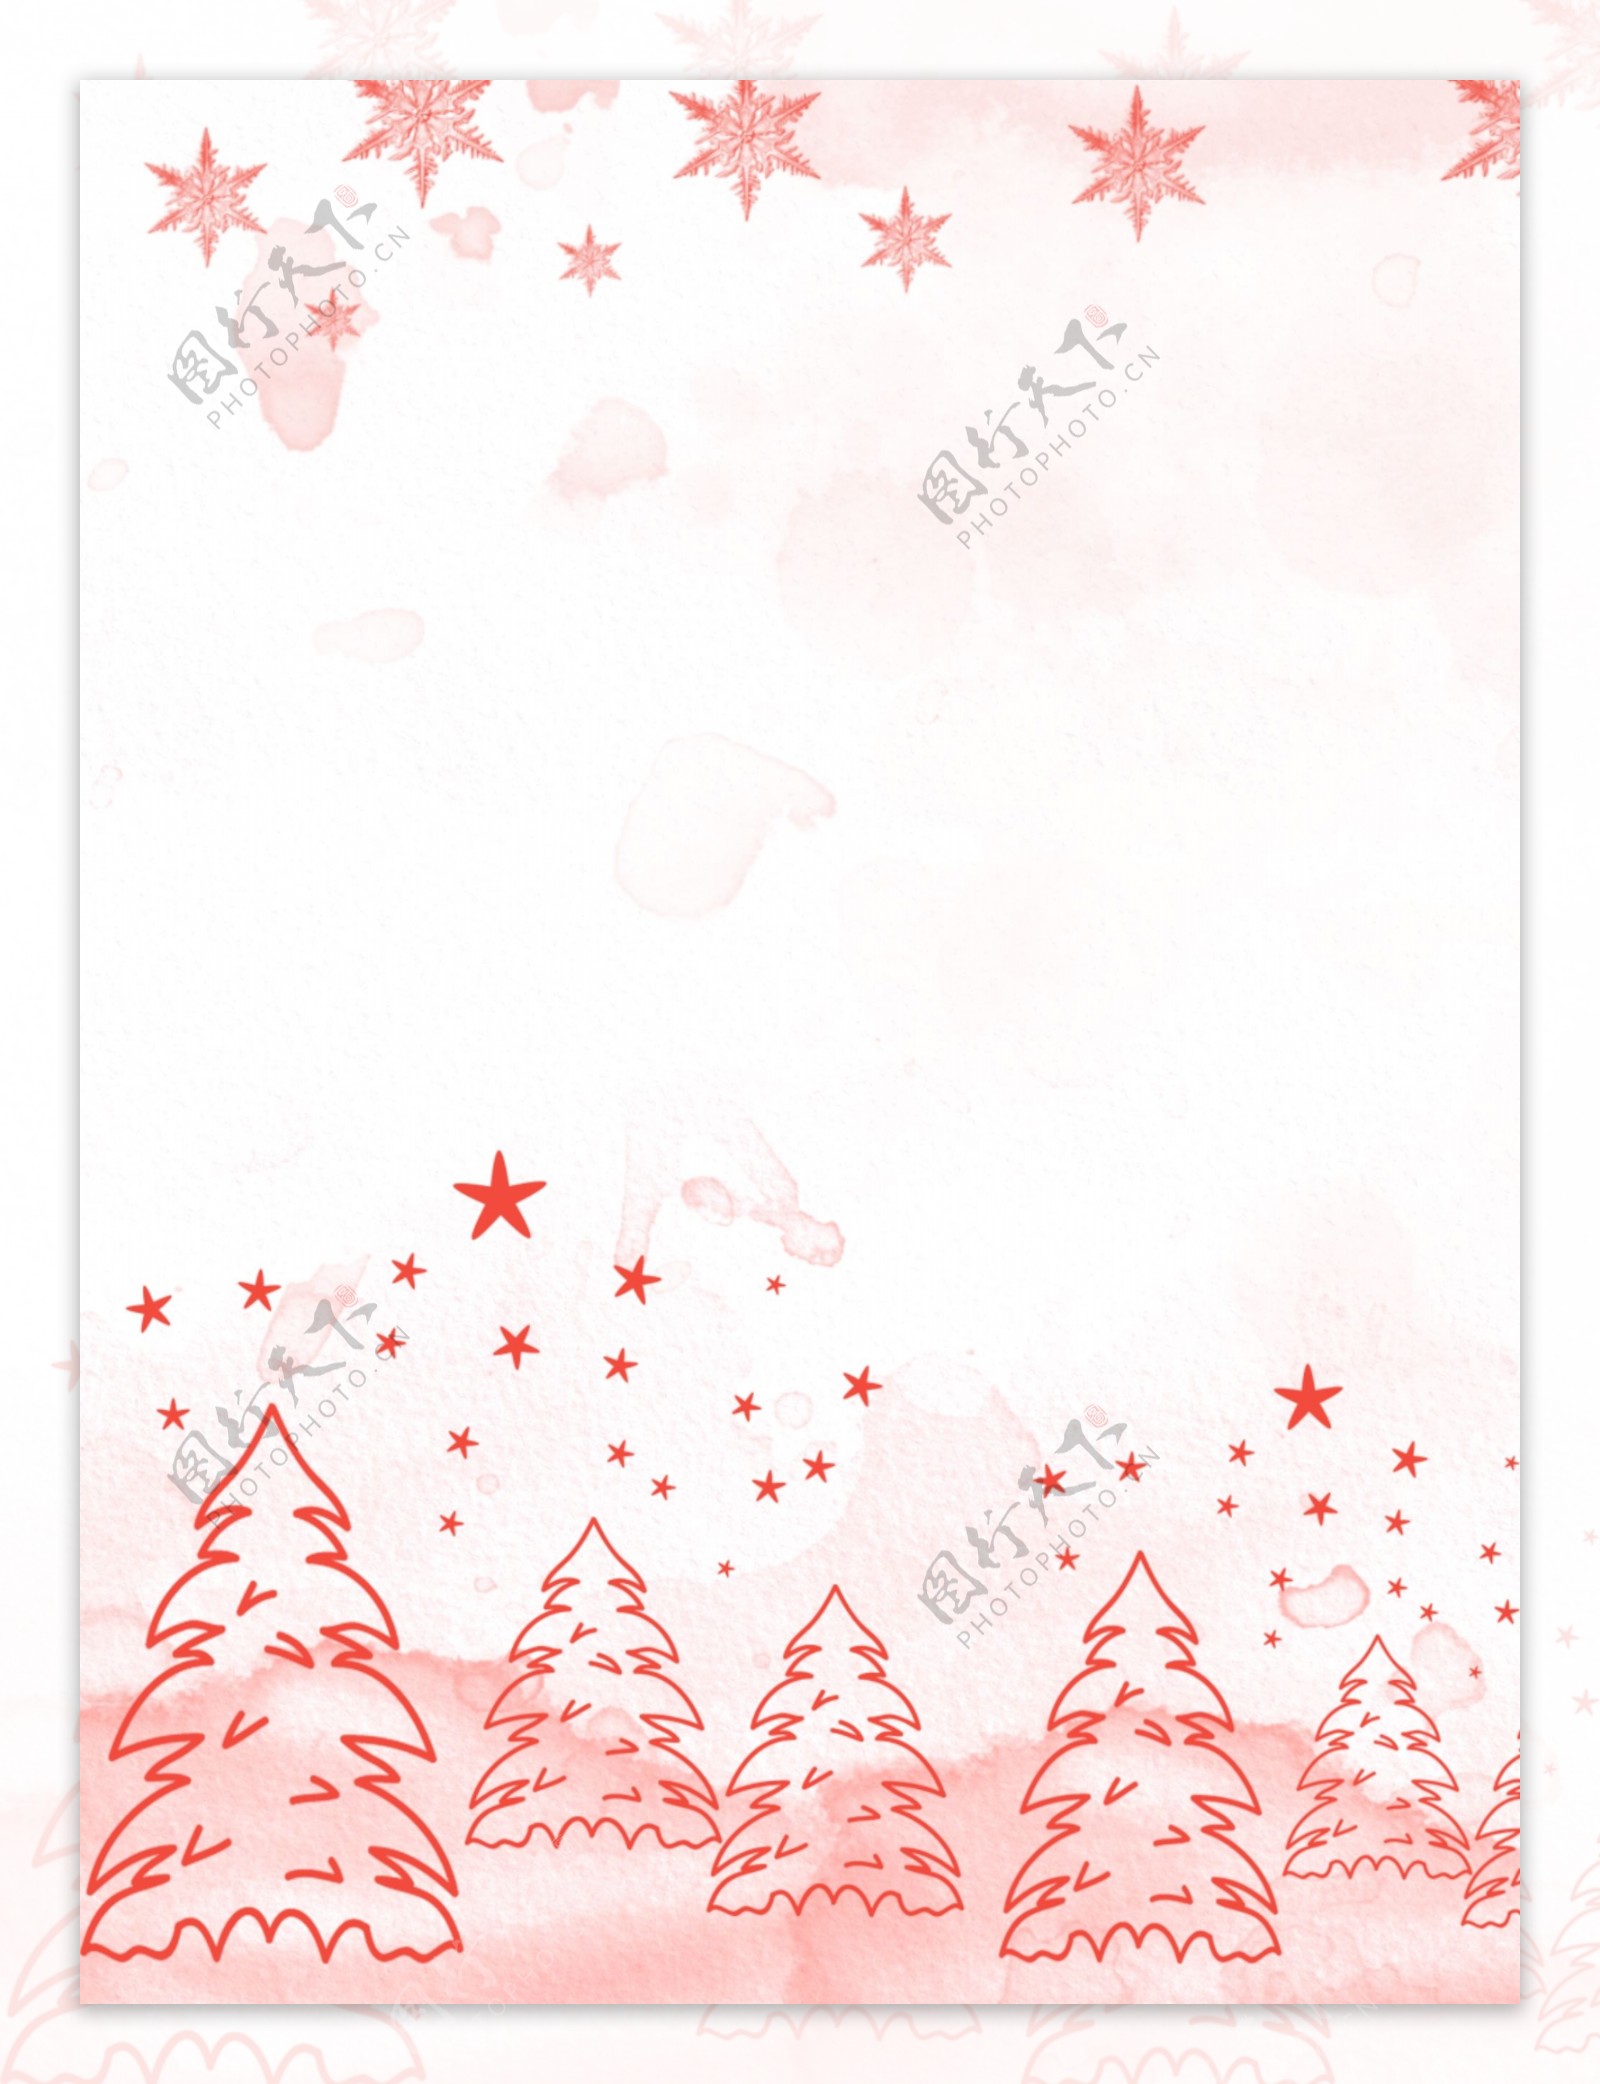 原创卡通线条圣诞树五角星圣诞节水彩背景